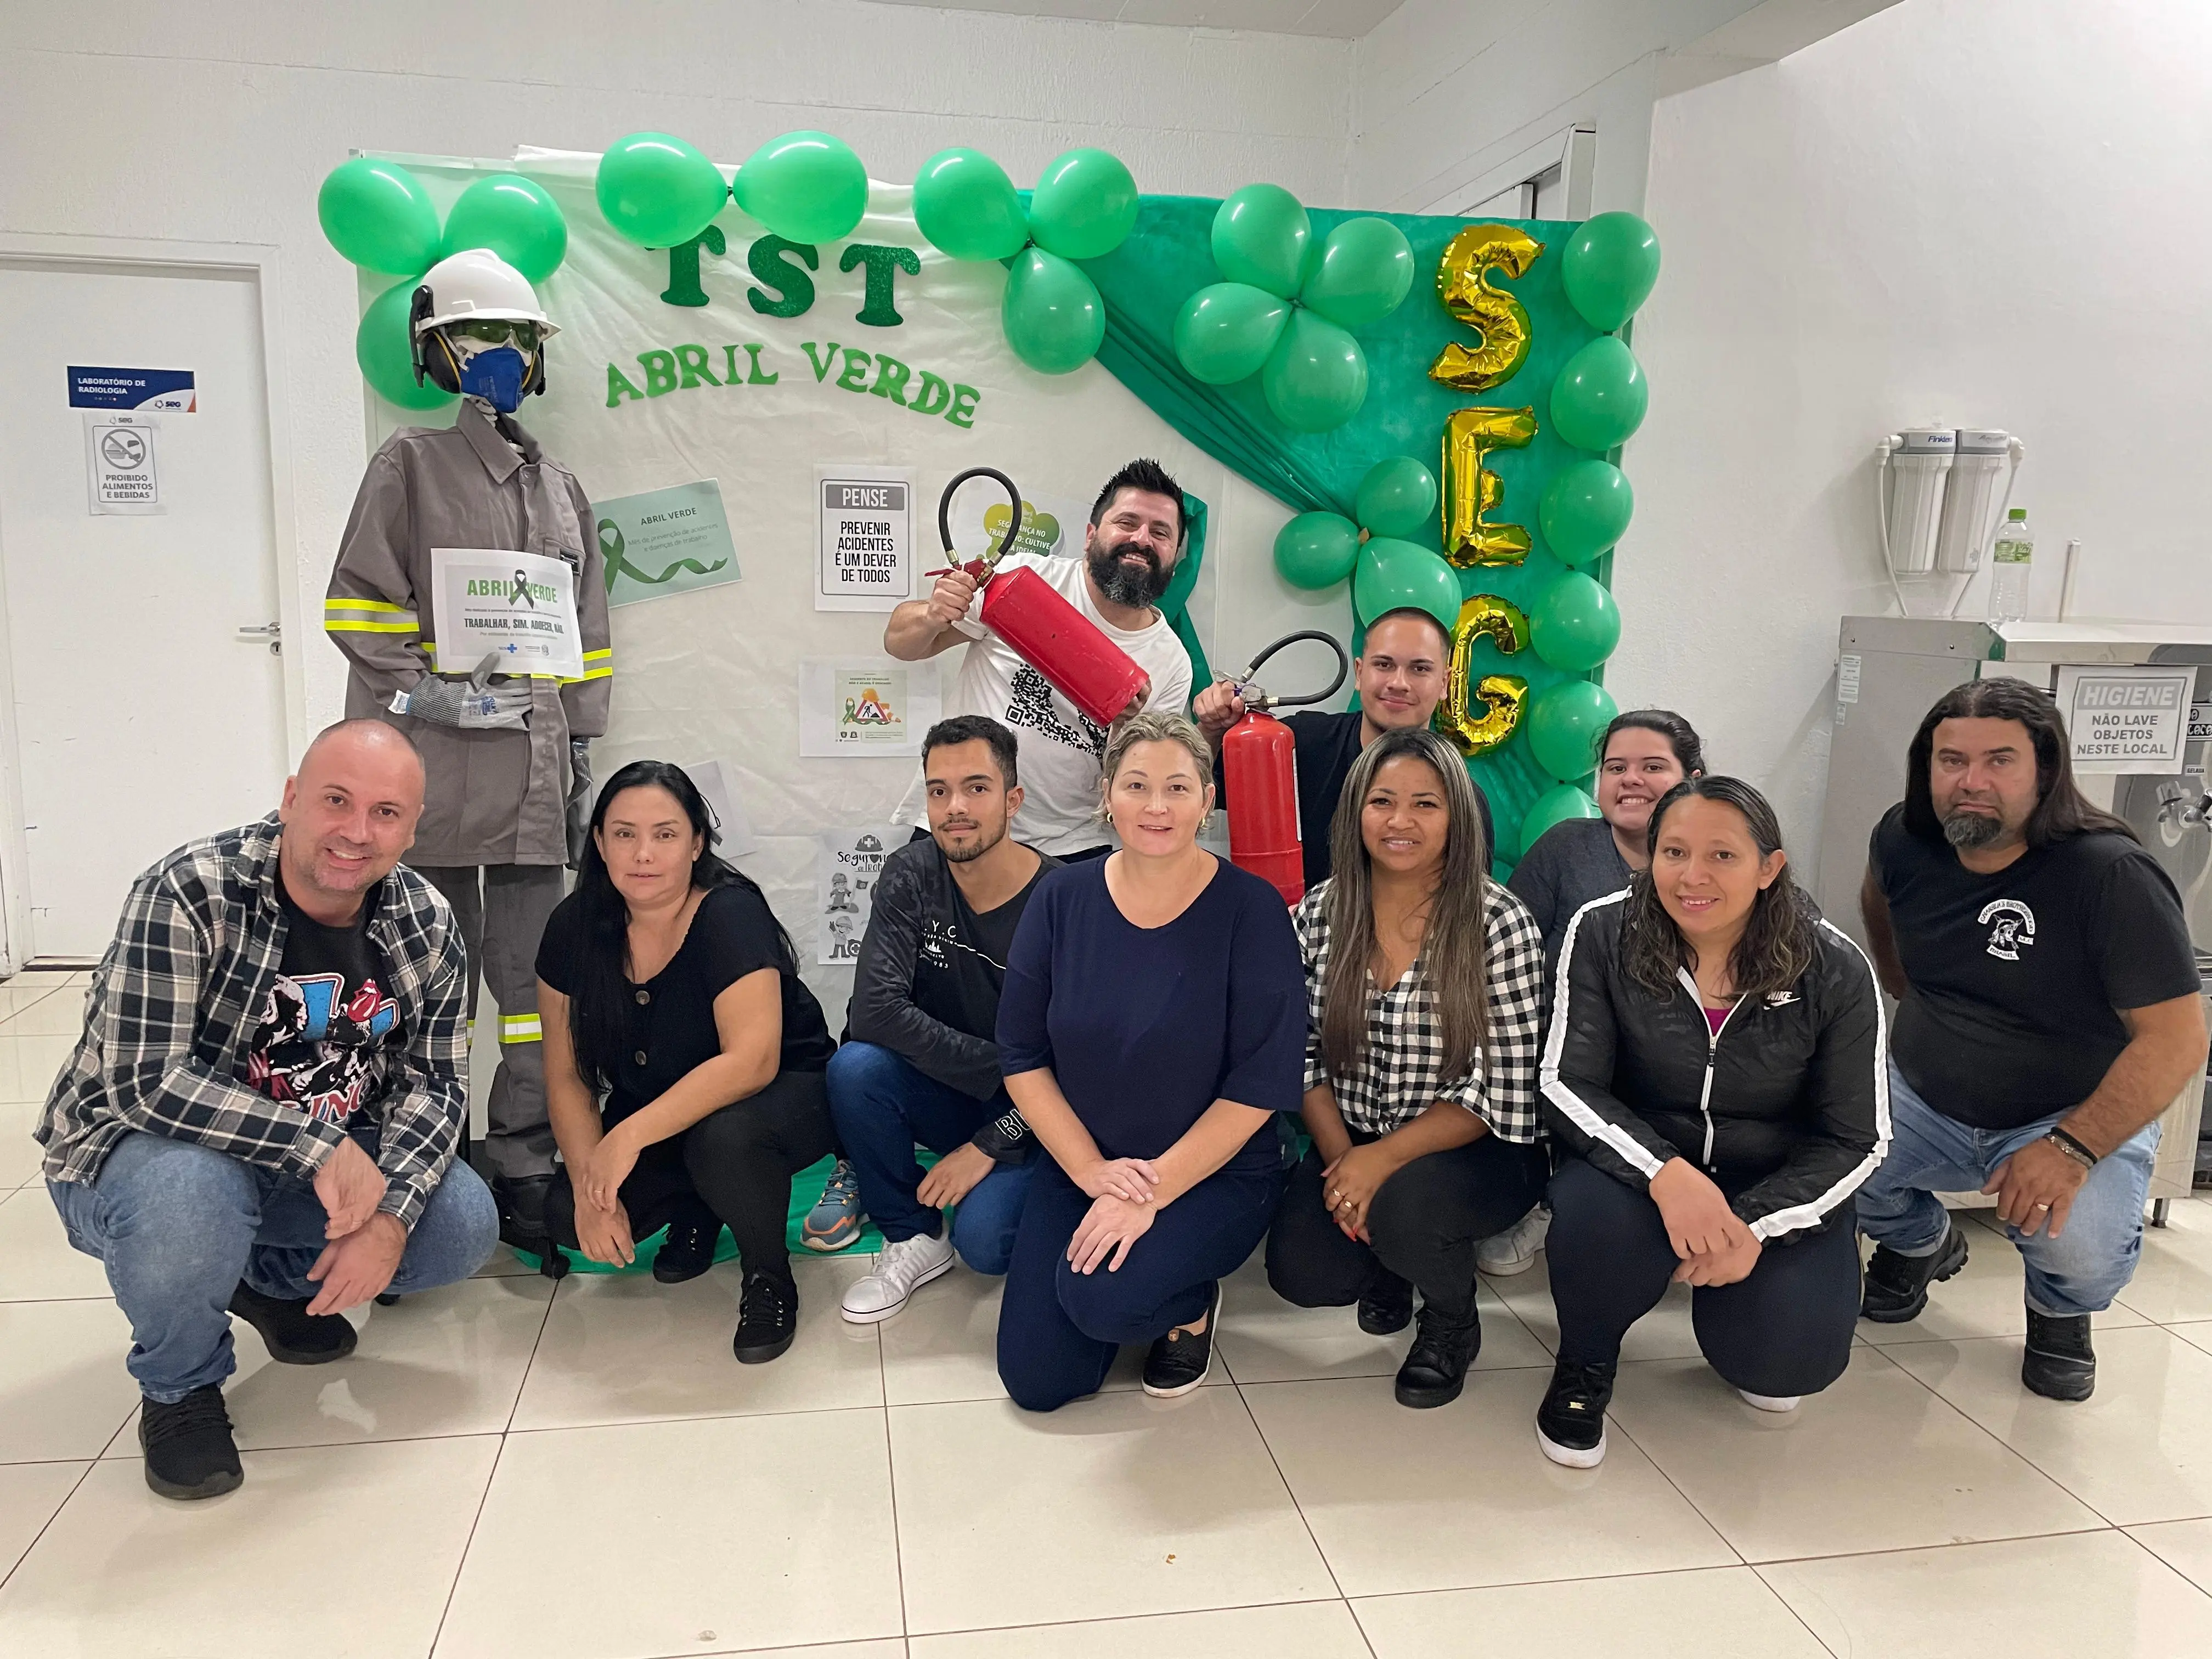 Alunos do curso Técnico de Enfermagem de Ijuí promovem atividade em prol do Abril Verde